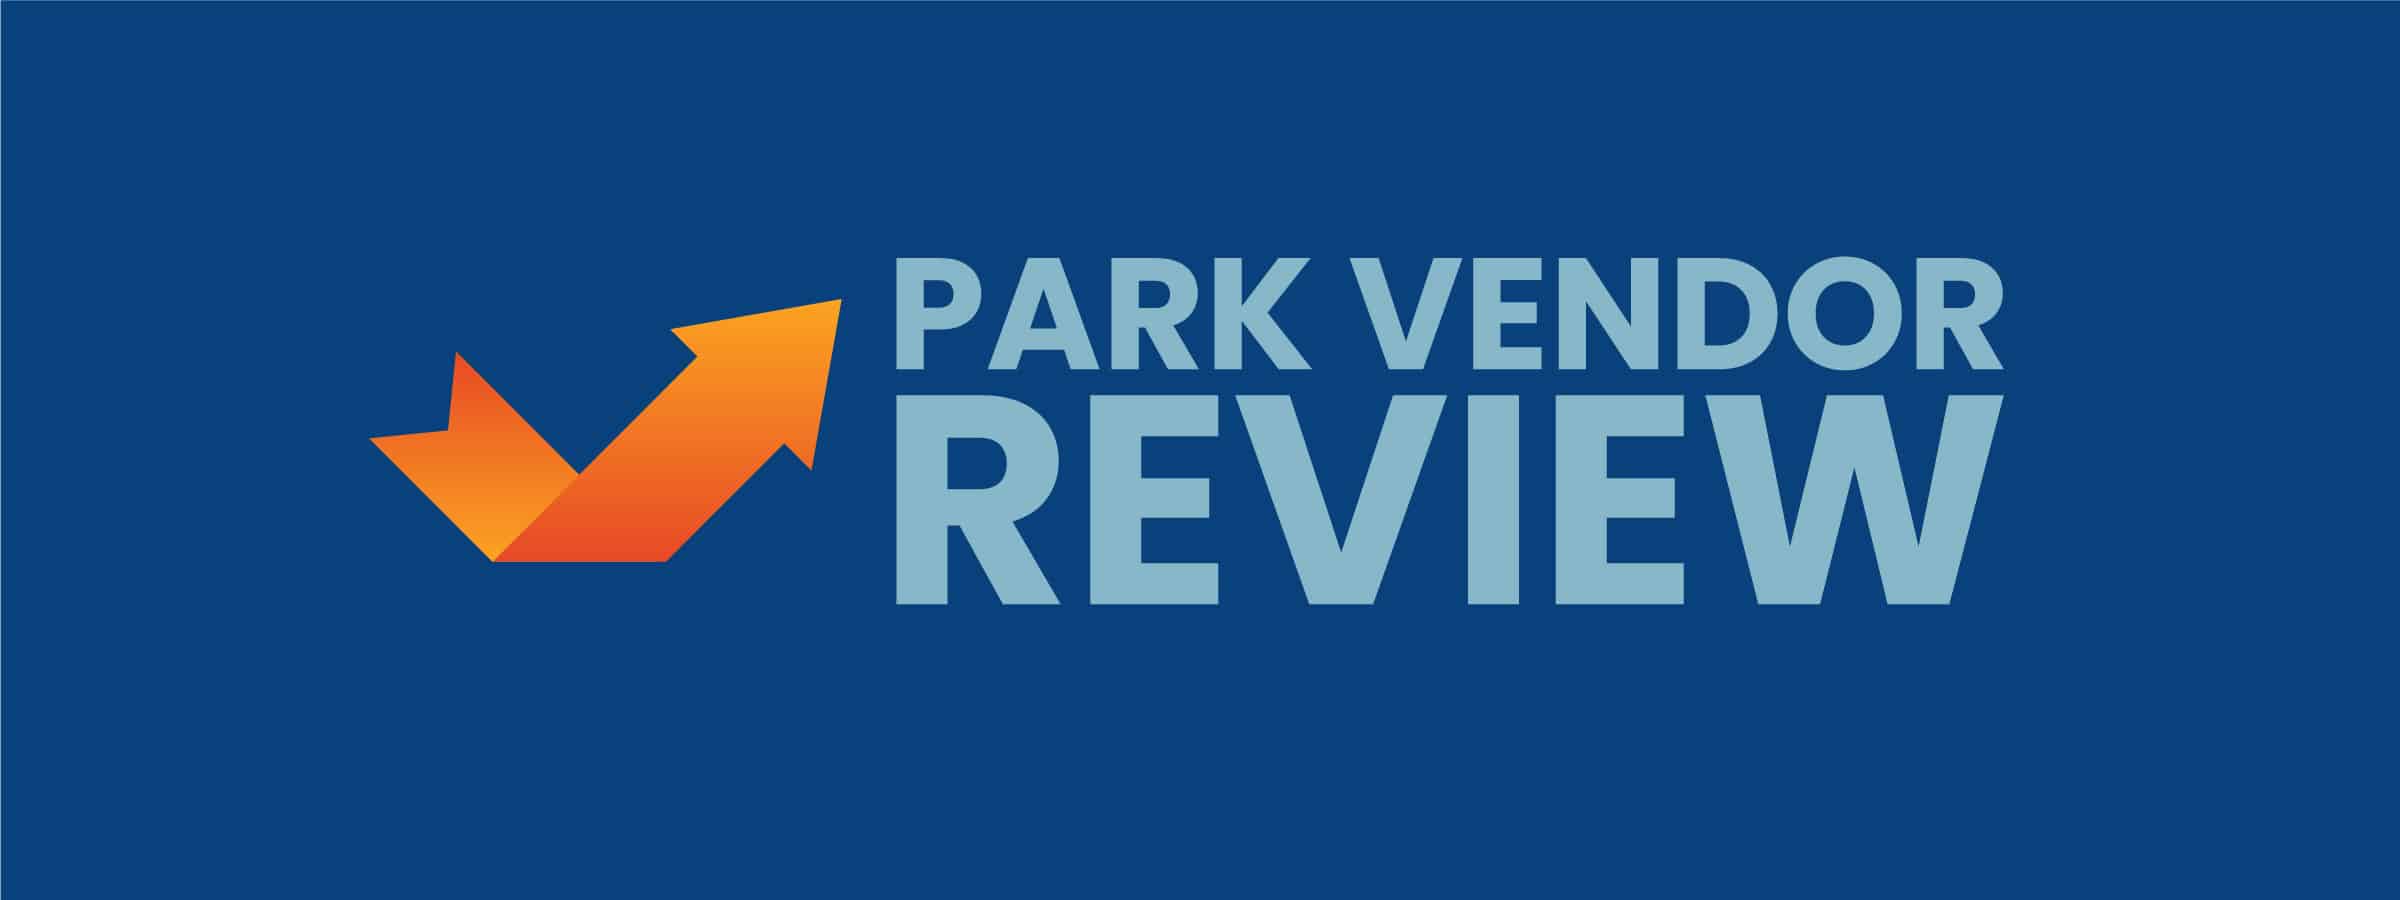 Park Vendor Review Logo